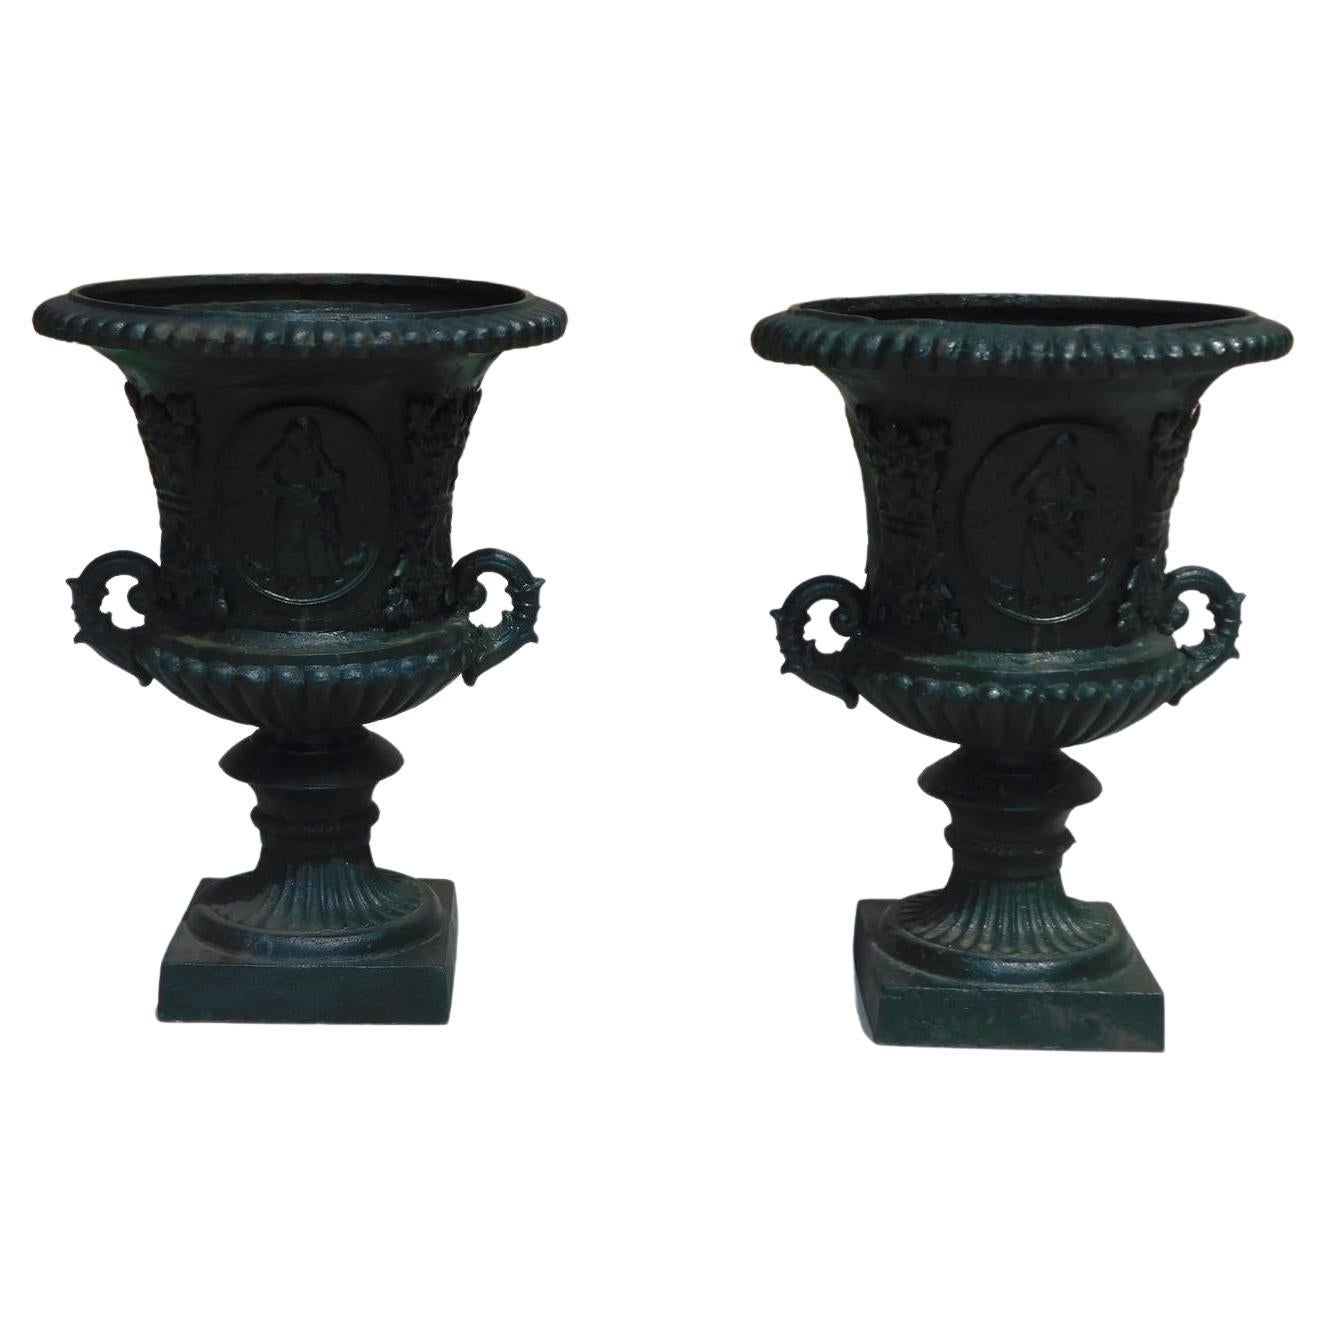 Paire d'urnes de jardin classiques américaines en forme de campane figuratives et de feuillage datant d'environ 1850